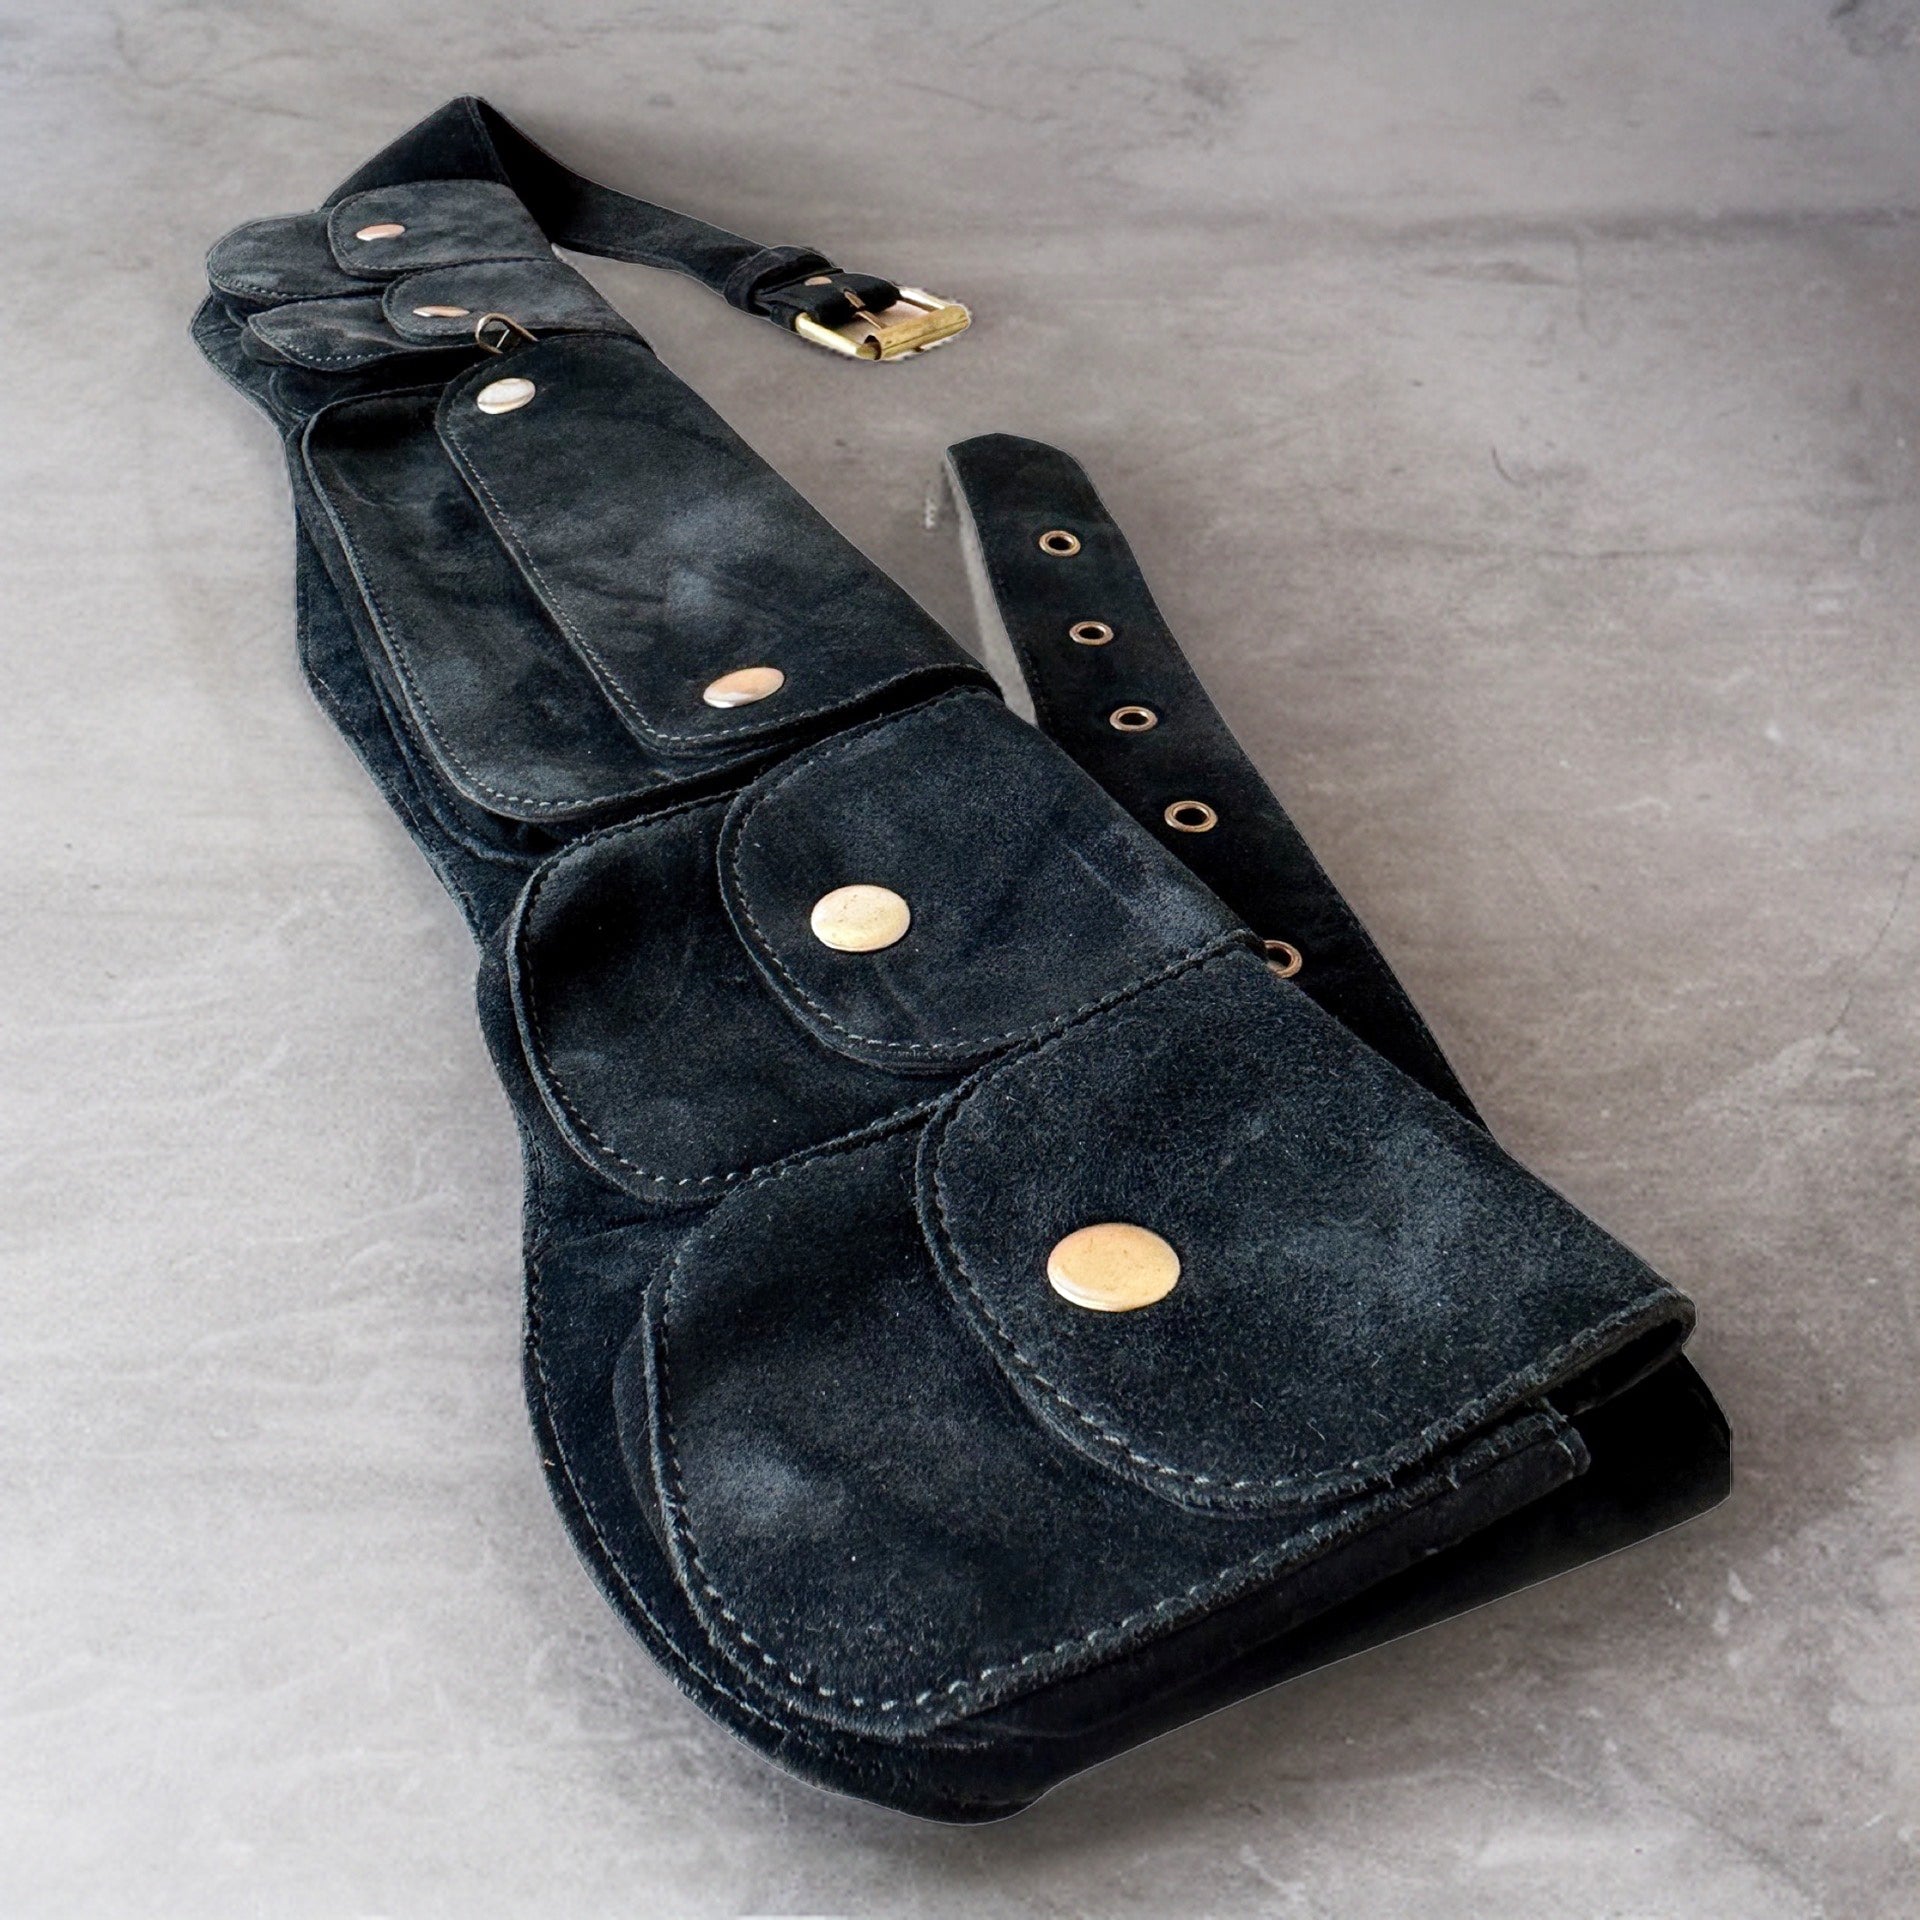 Genuine Leather Pocket Belt | Black Suede, 7 Pocket | money belt, travel belt, festival belt, vendor belt, belt bag, burning man belt